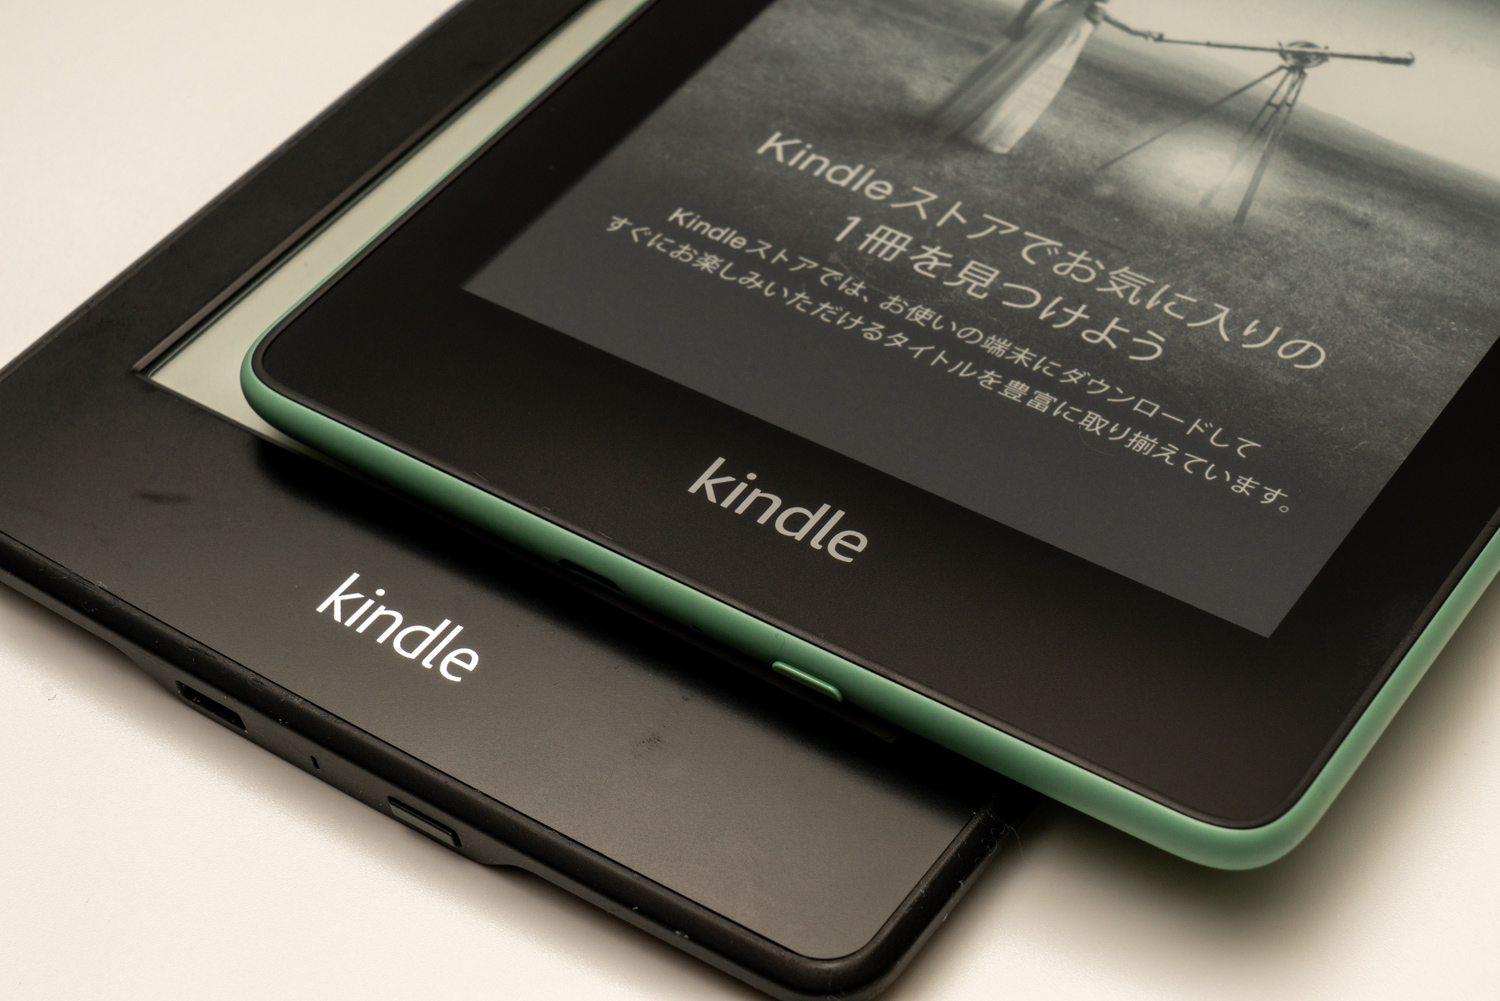 【美品】Kindle Paperwhite 第10世代